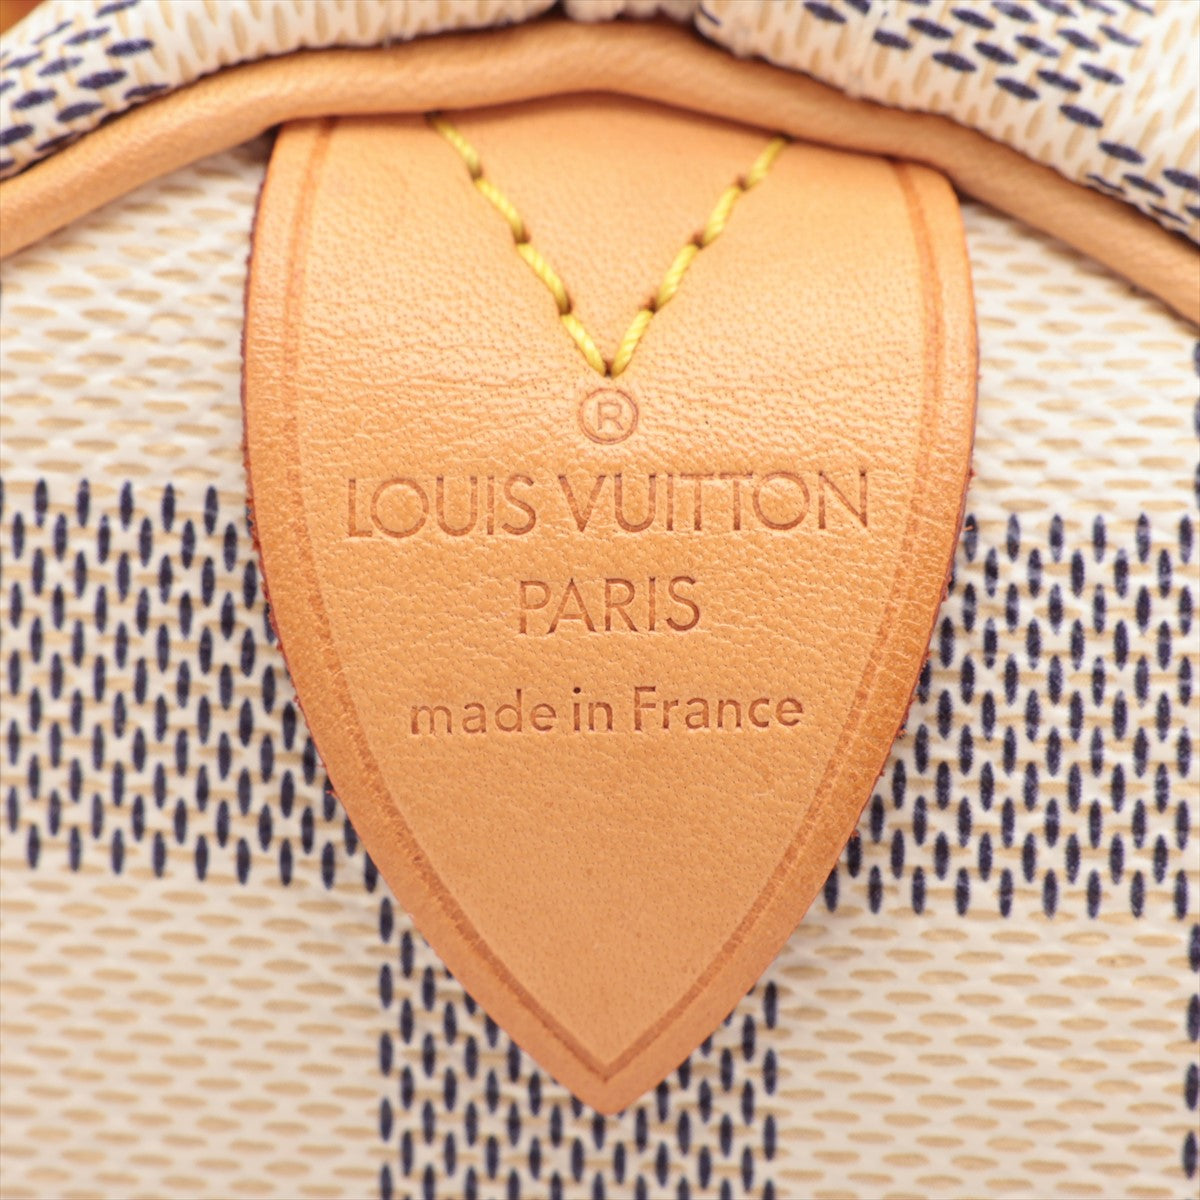 Louis Vuitton Damier Speedy 25 N41371